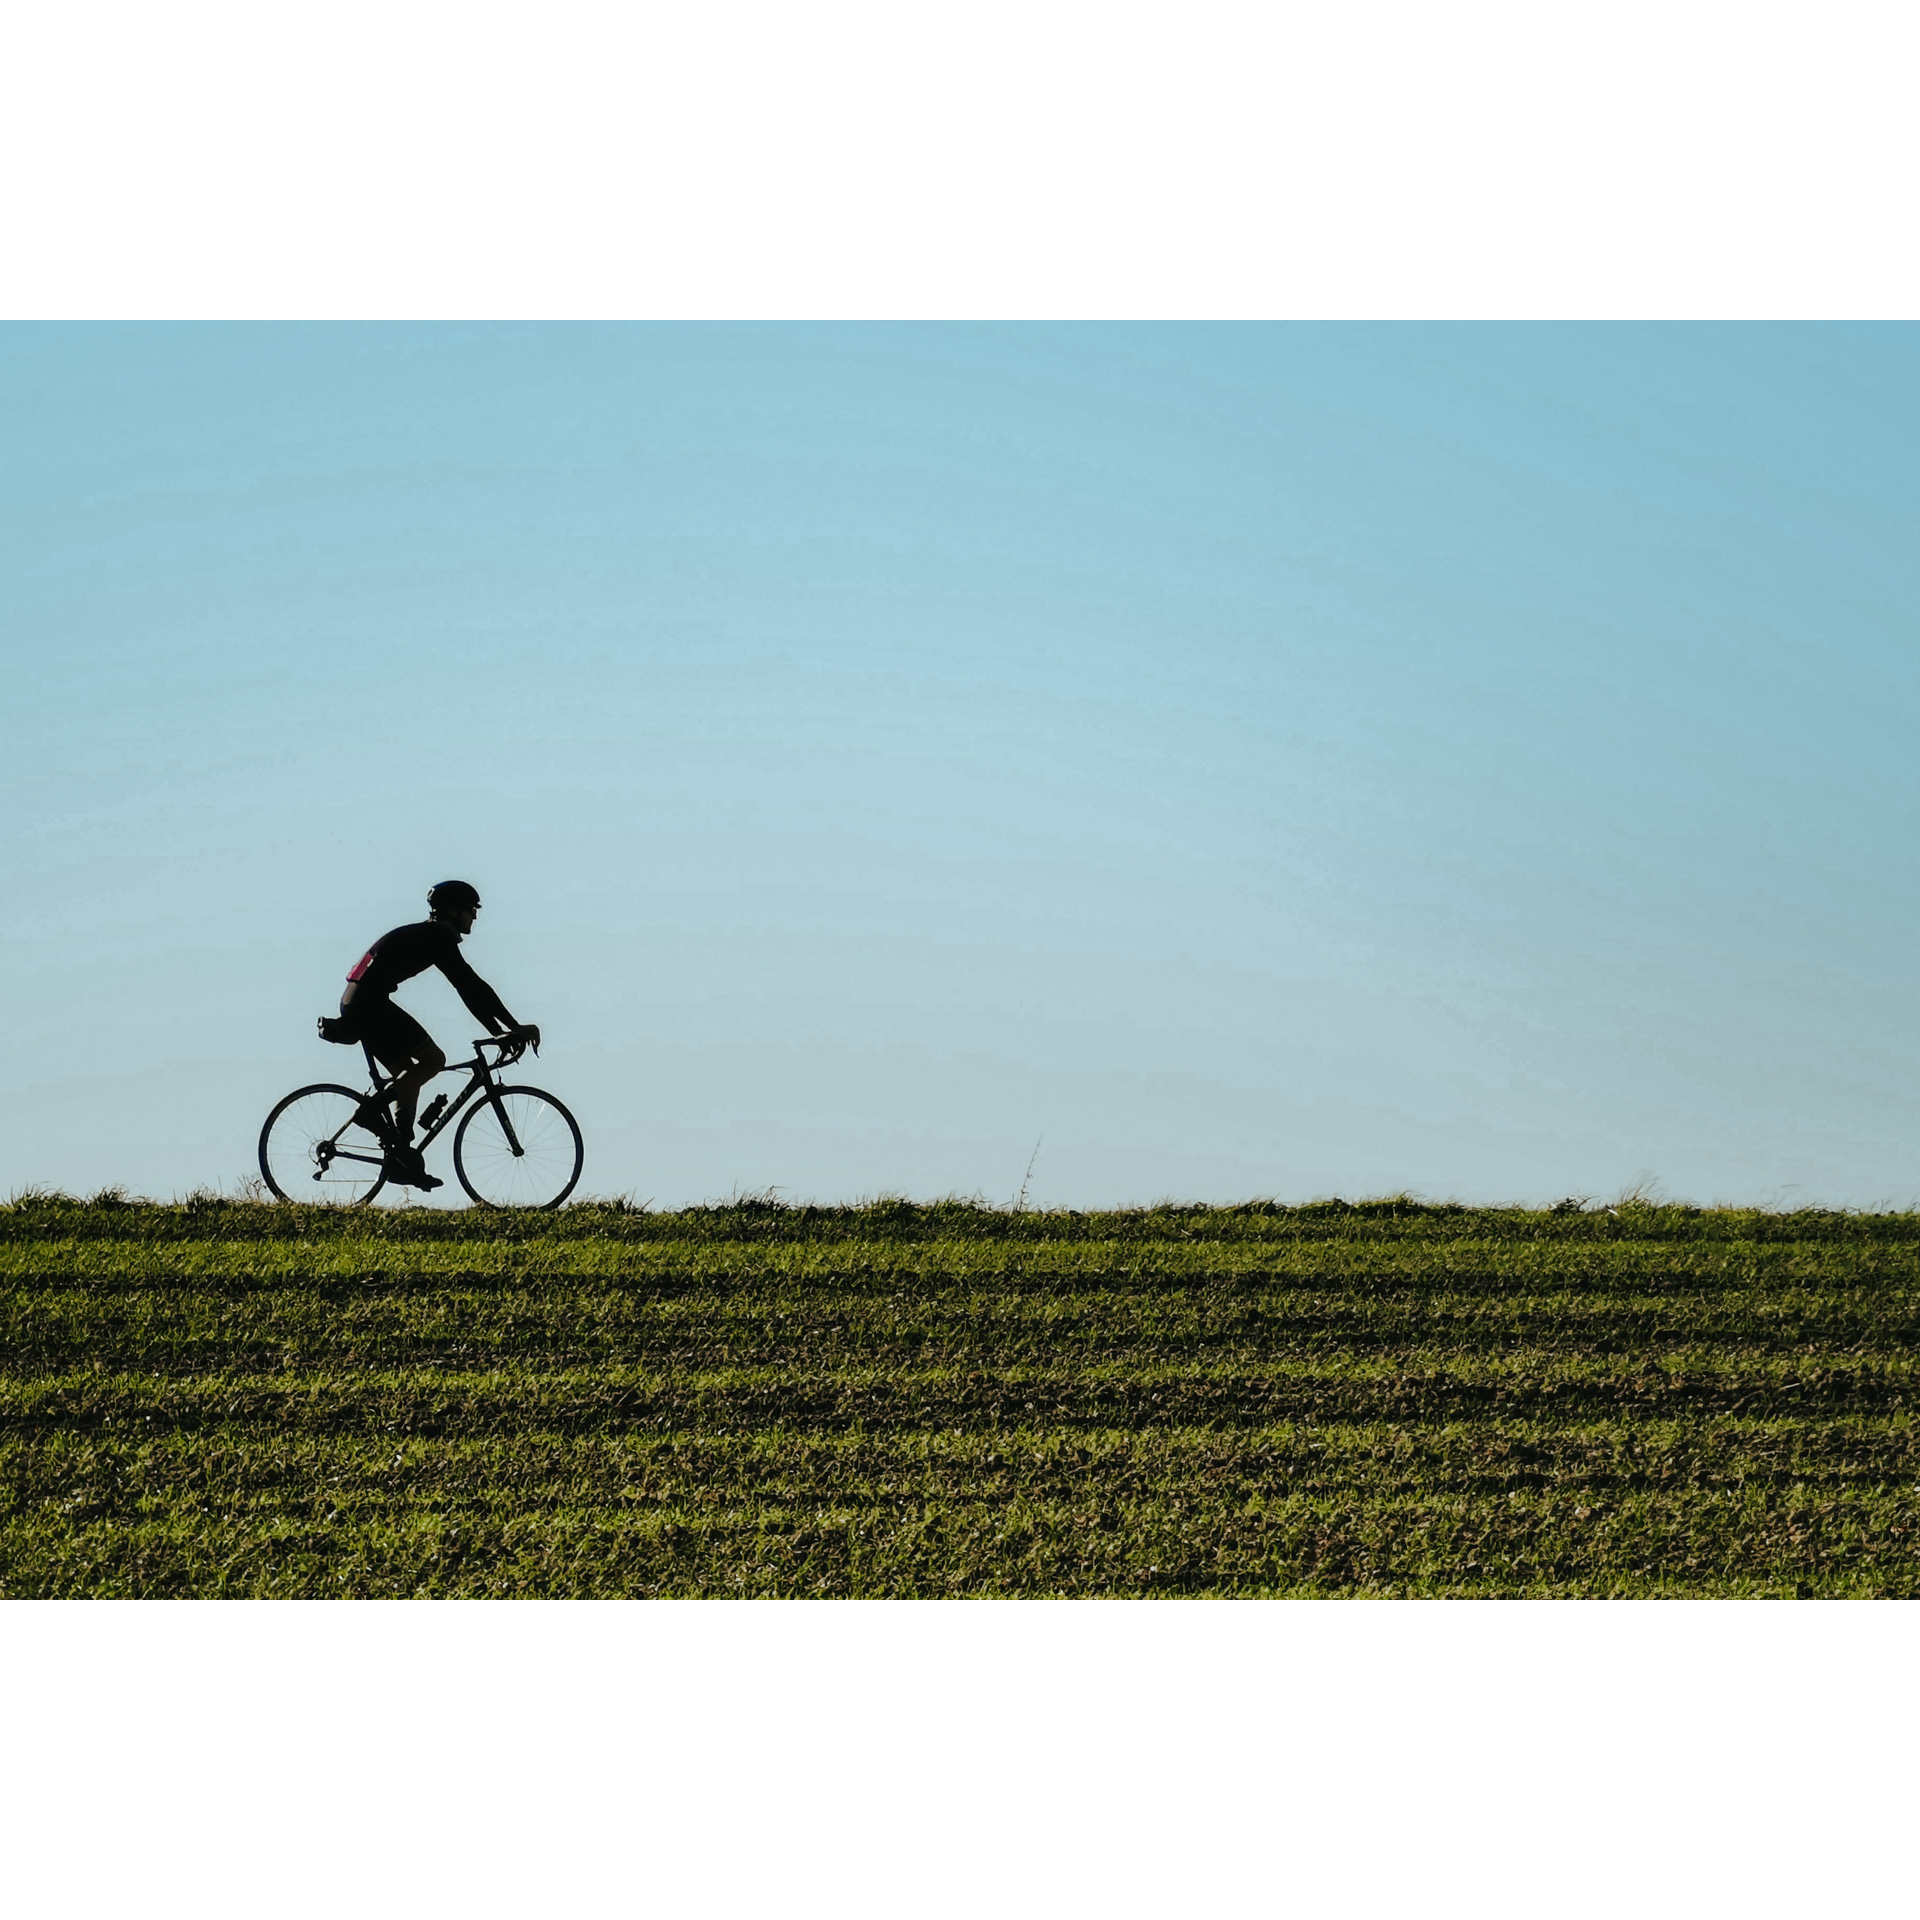 Rowerzysta w stroju kolarskim i kasku jadący wzdłuż zielonego pola uprawnego na tle błękitnego nieba